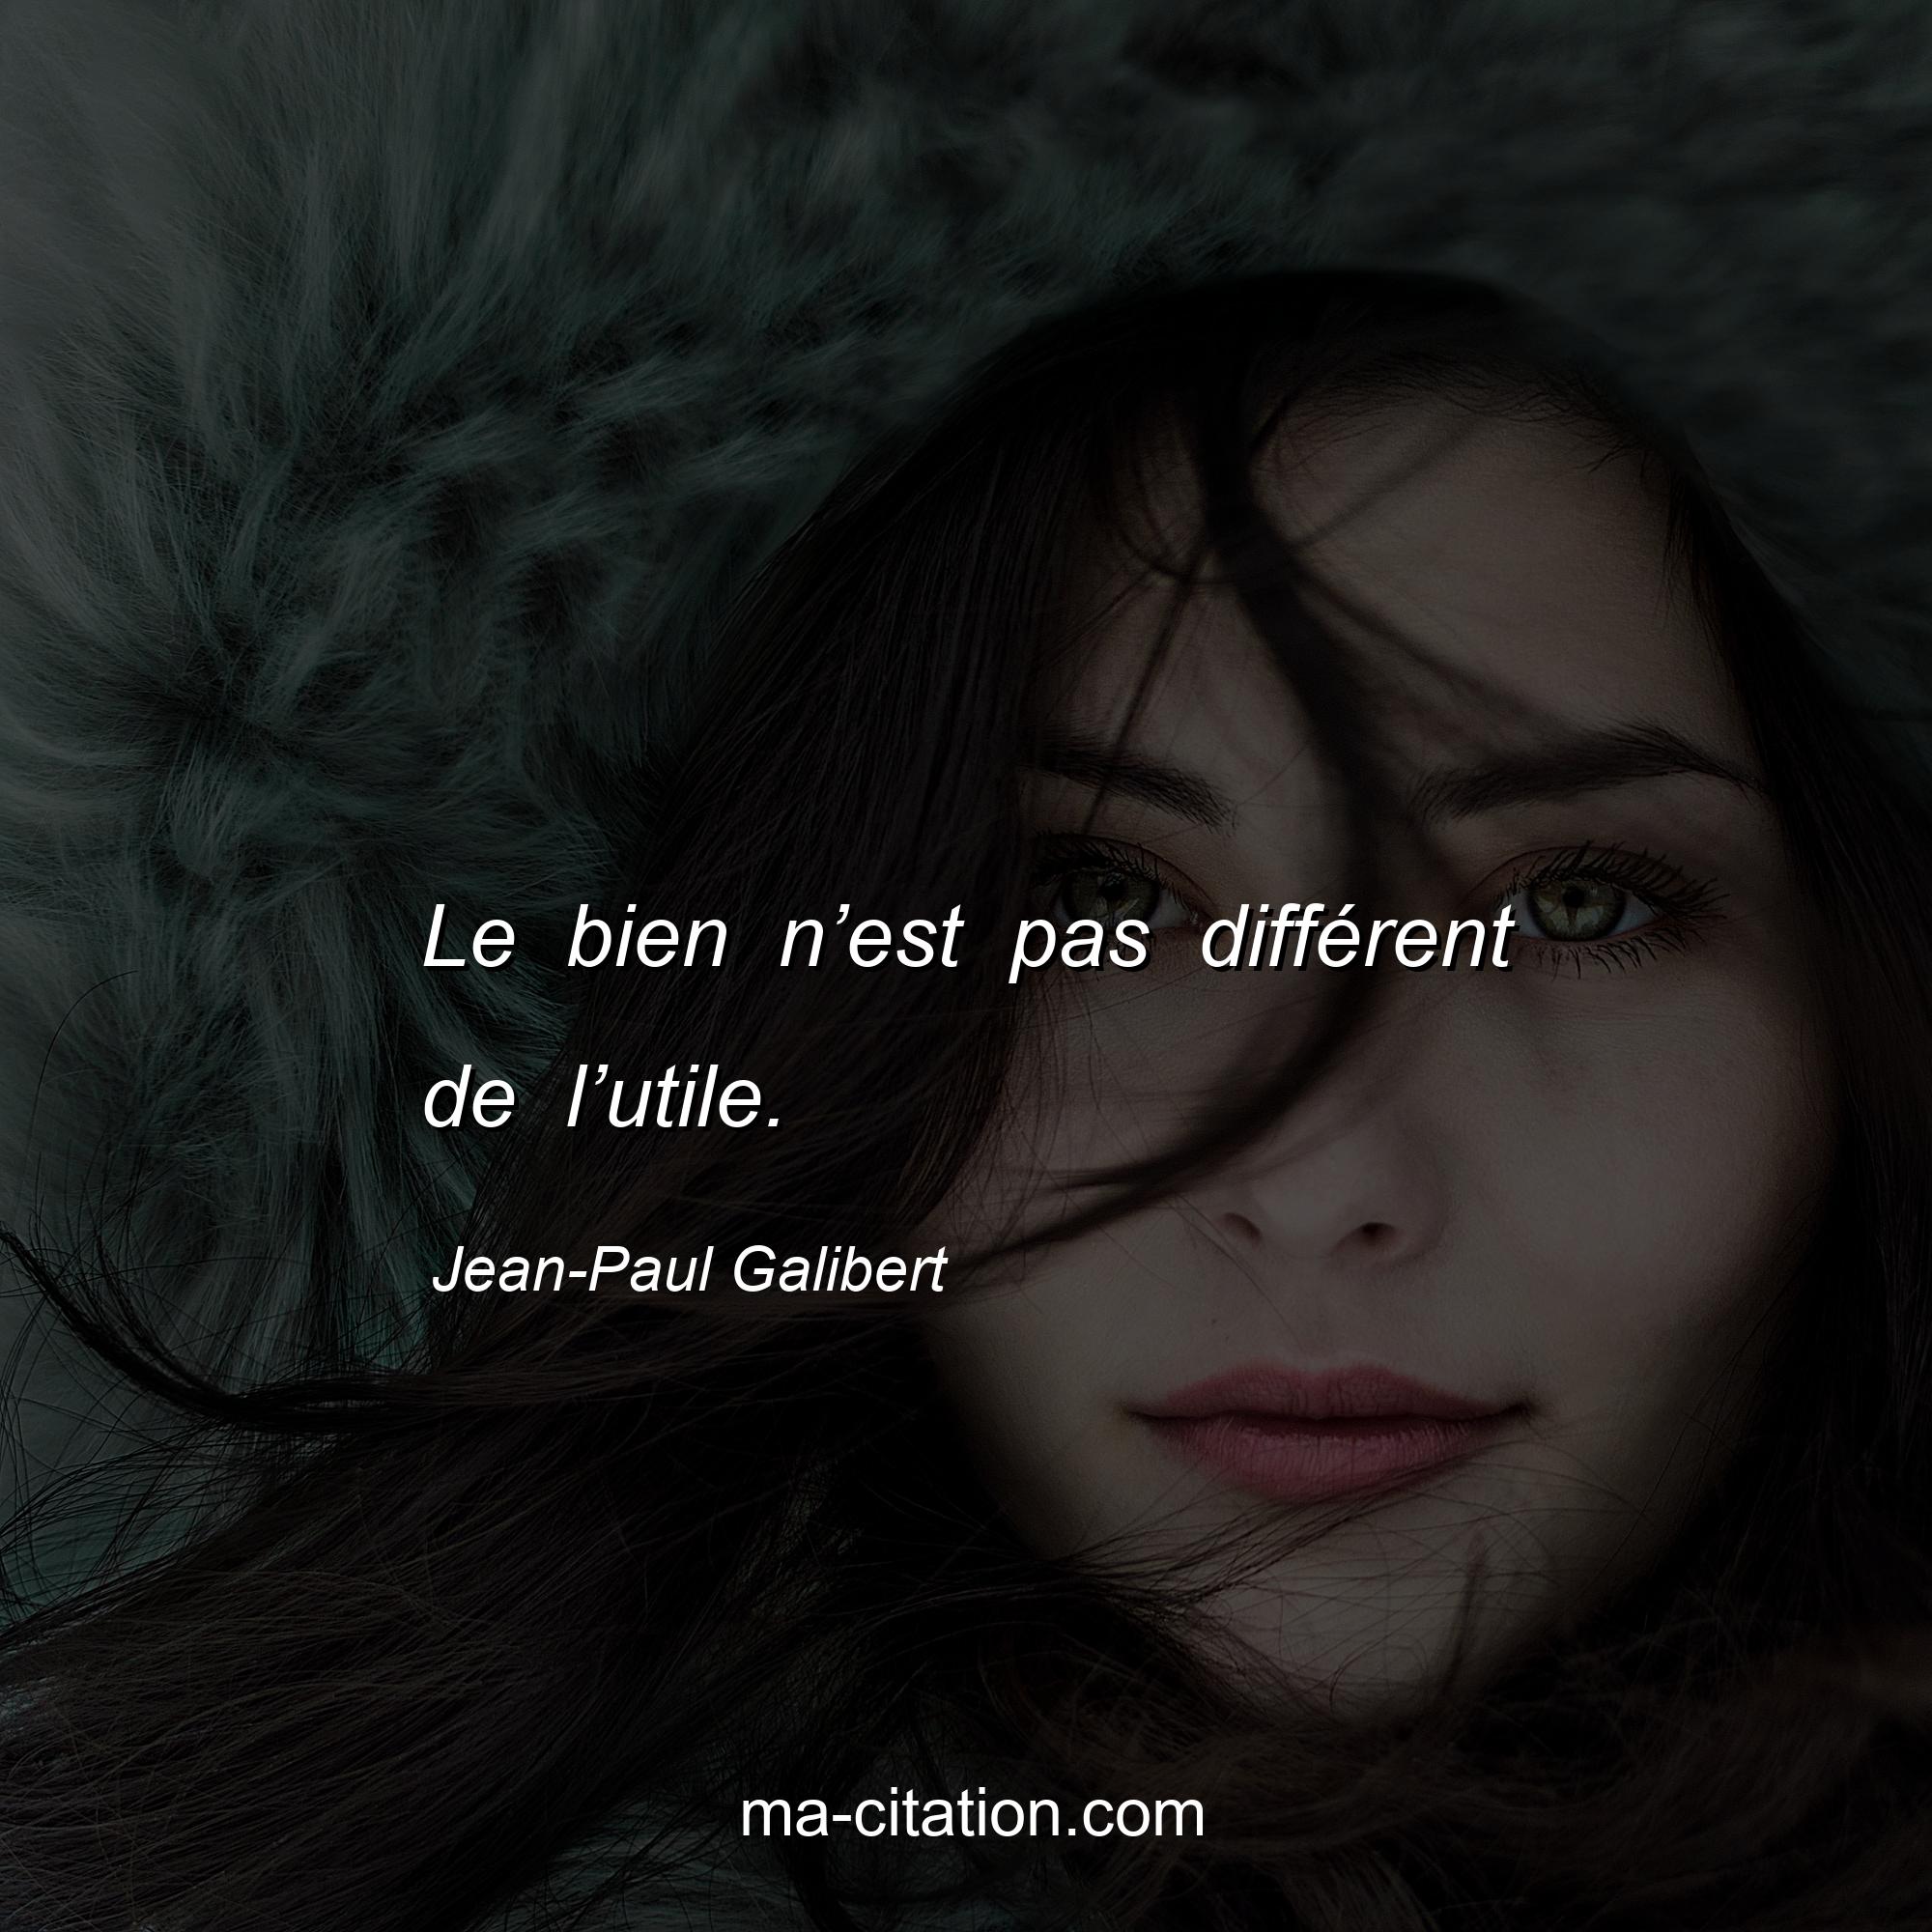 Jean-Paul Galibert : Le bien n’est pas différent de l’utile.